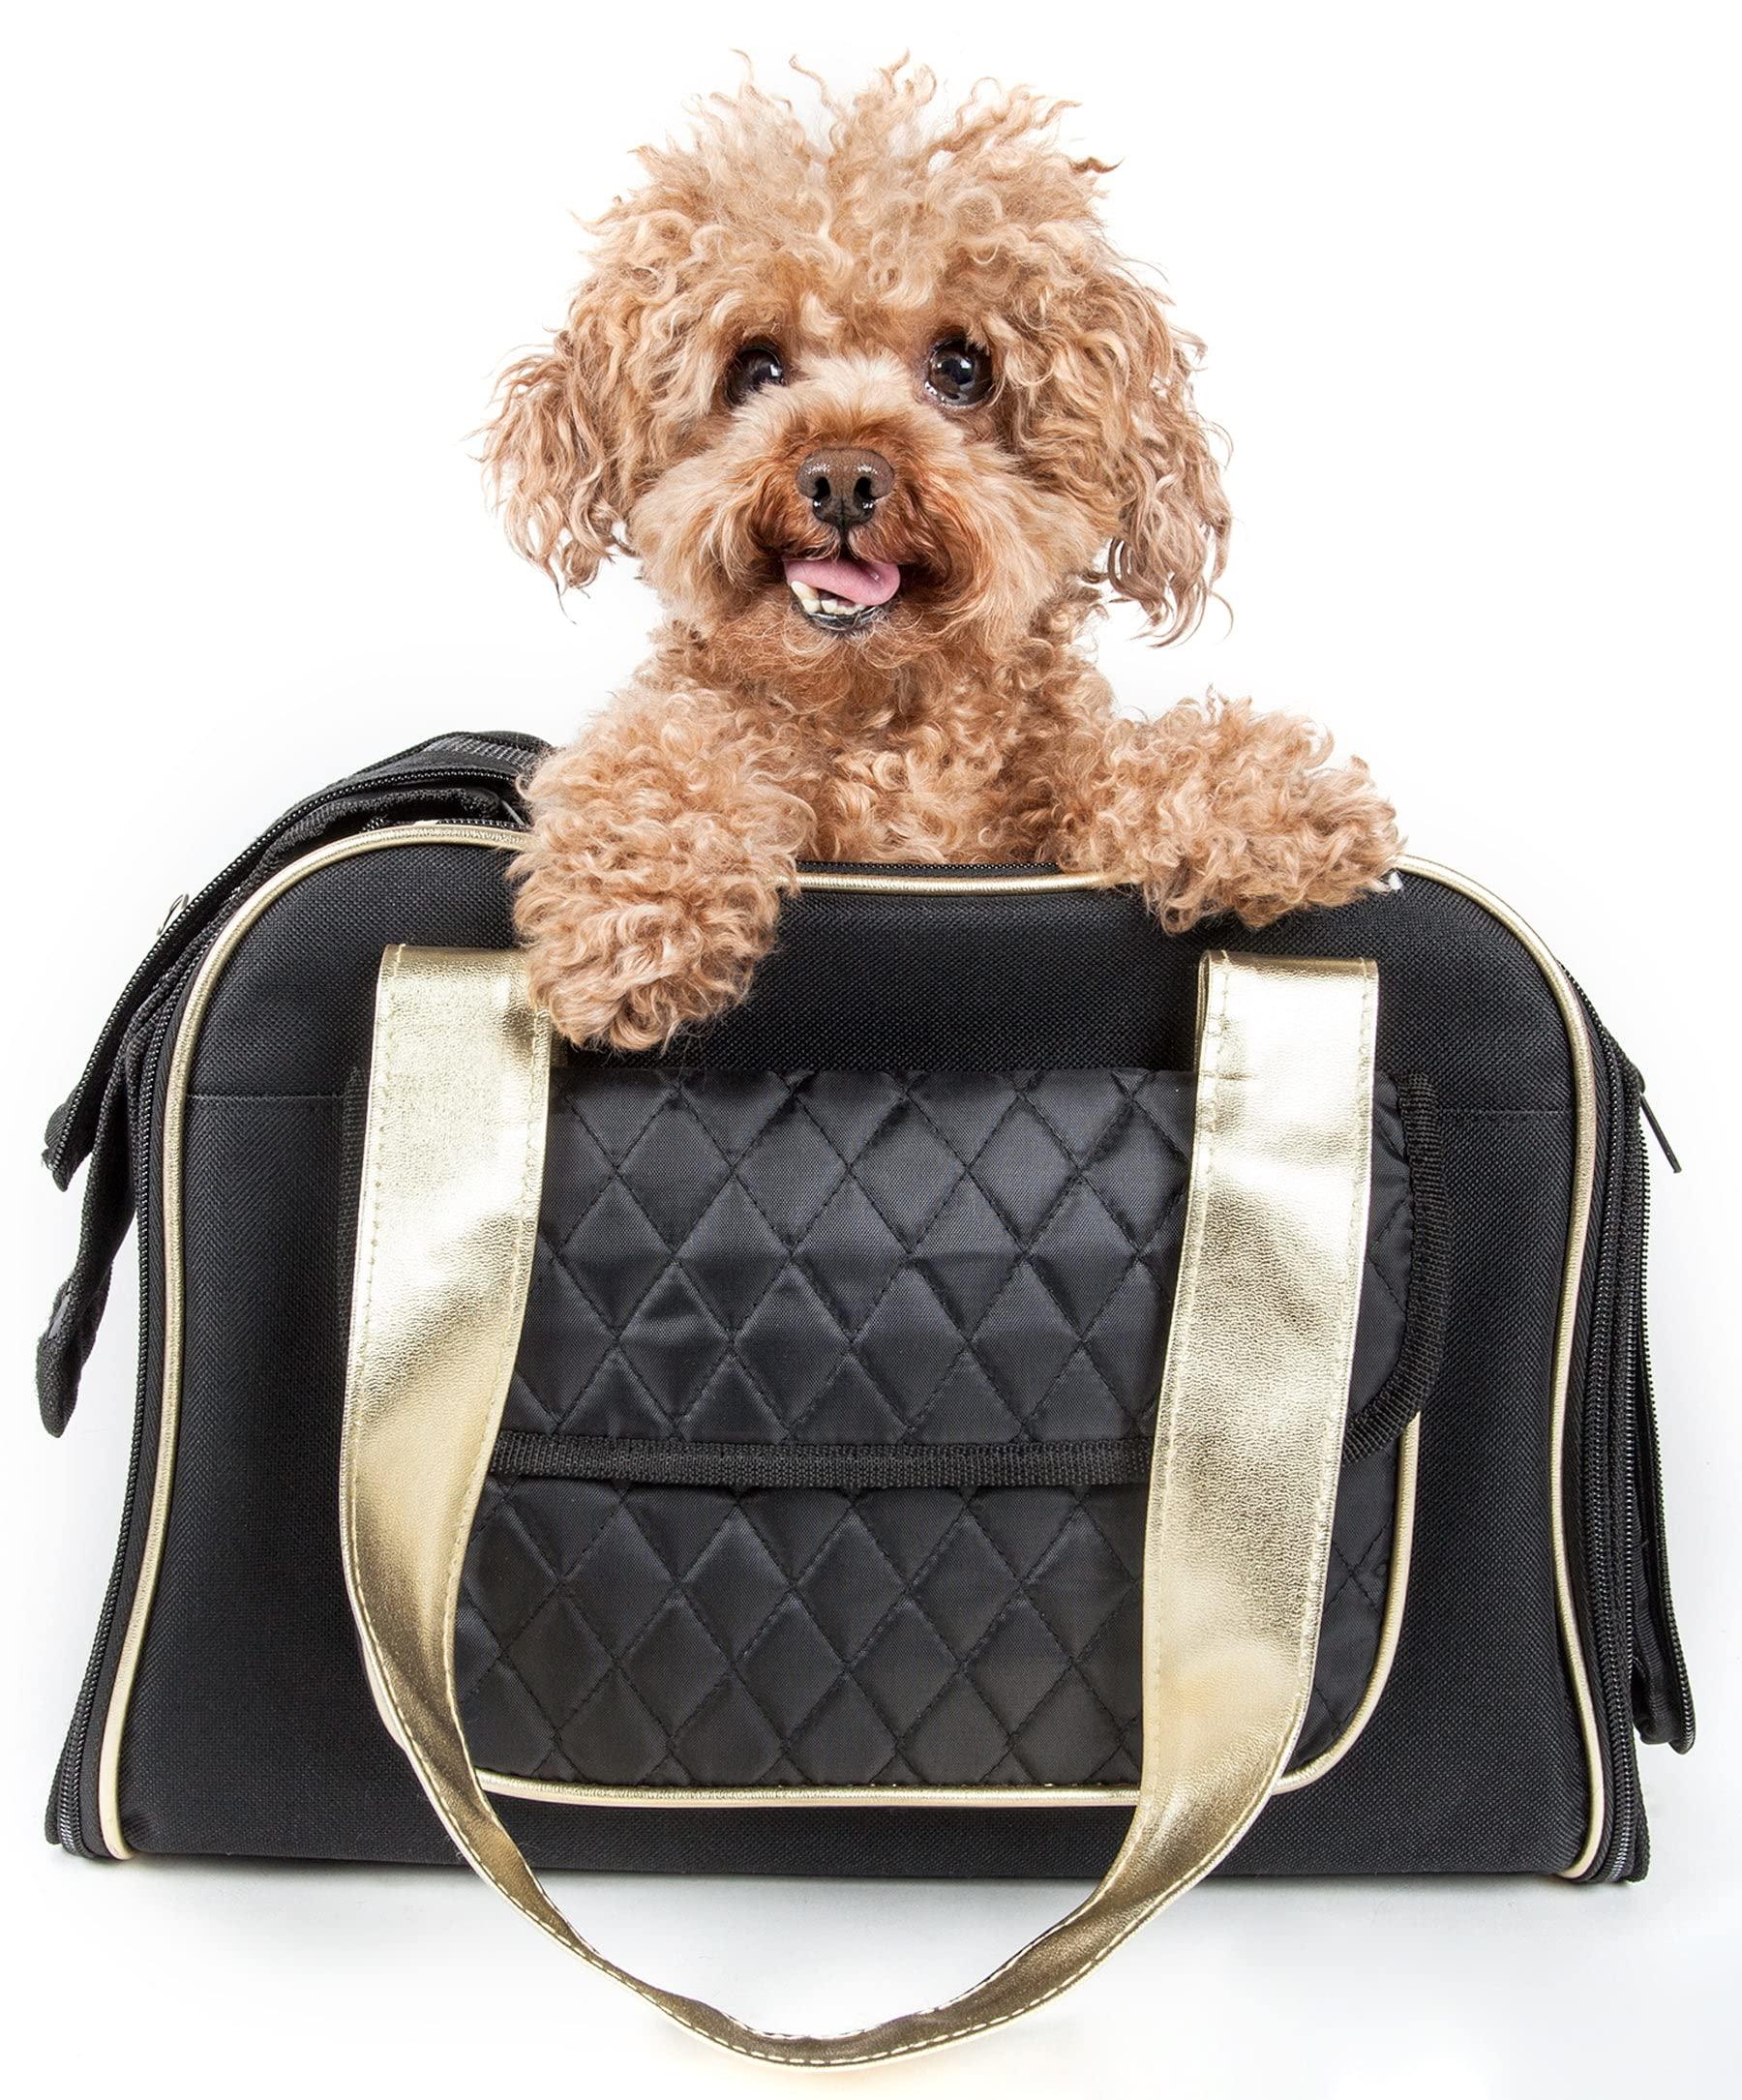 PET LIFE Mystique Airline Approved Fashion Designer Travel Pet Dog carrier, One Size, Black